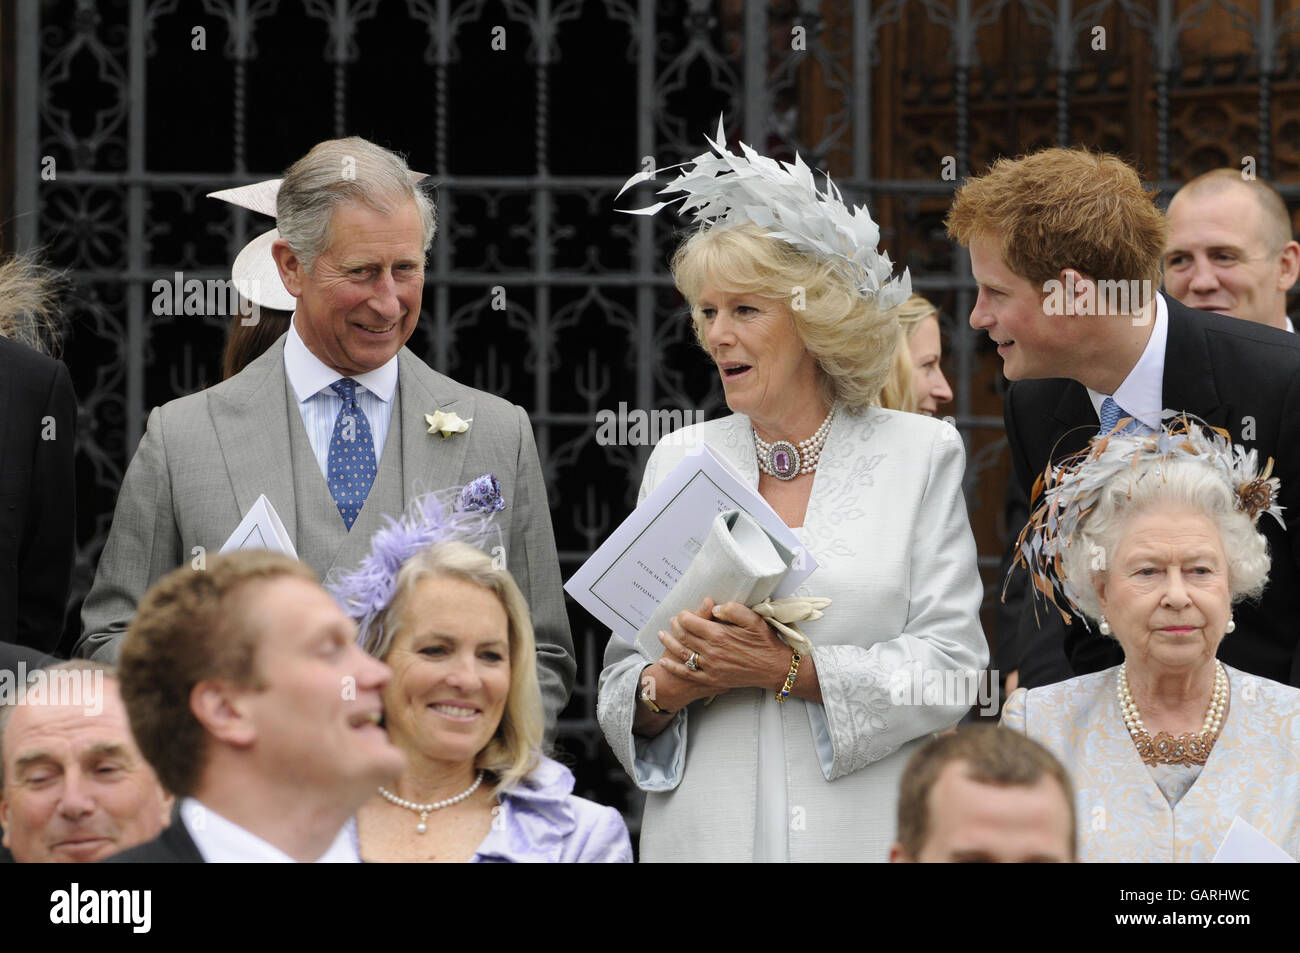 Königin Elizabeth II. Und der Prinz von Wales, Herzogin von Cornwall und Prinz Harry vor der St. George's Chapel in Windsor, England, nach der Hochzeitszeremonie von Peter Phillips und Autumn Kelly. Stockfoto